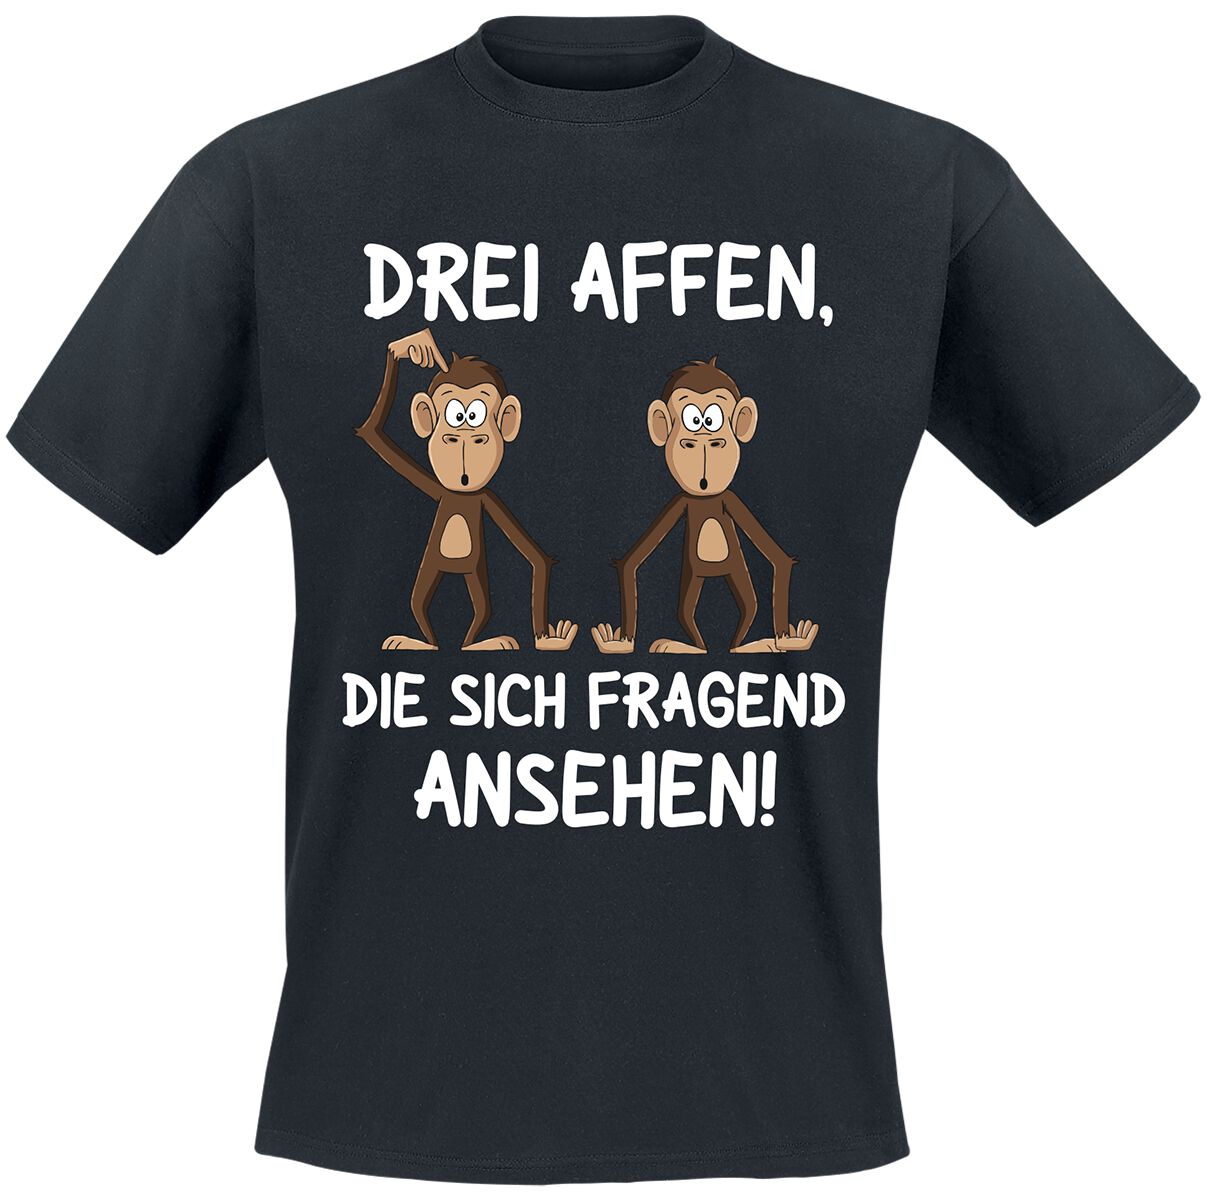 Tierisch T-Shirt - Drei Affen, die sich fragend ansehen! - M bis 4XL - für Männer - Größe 3XL - schwarz